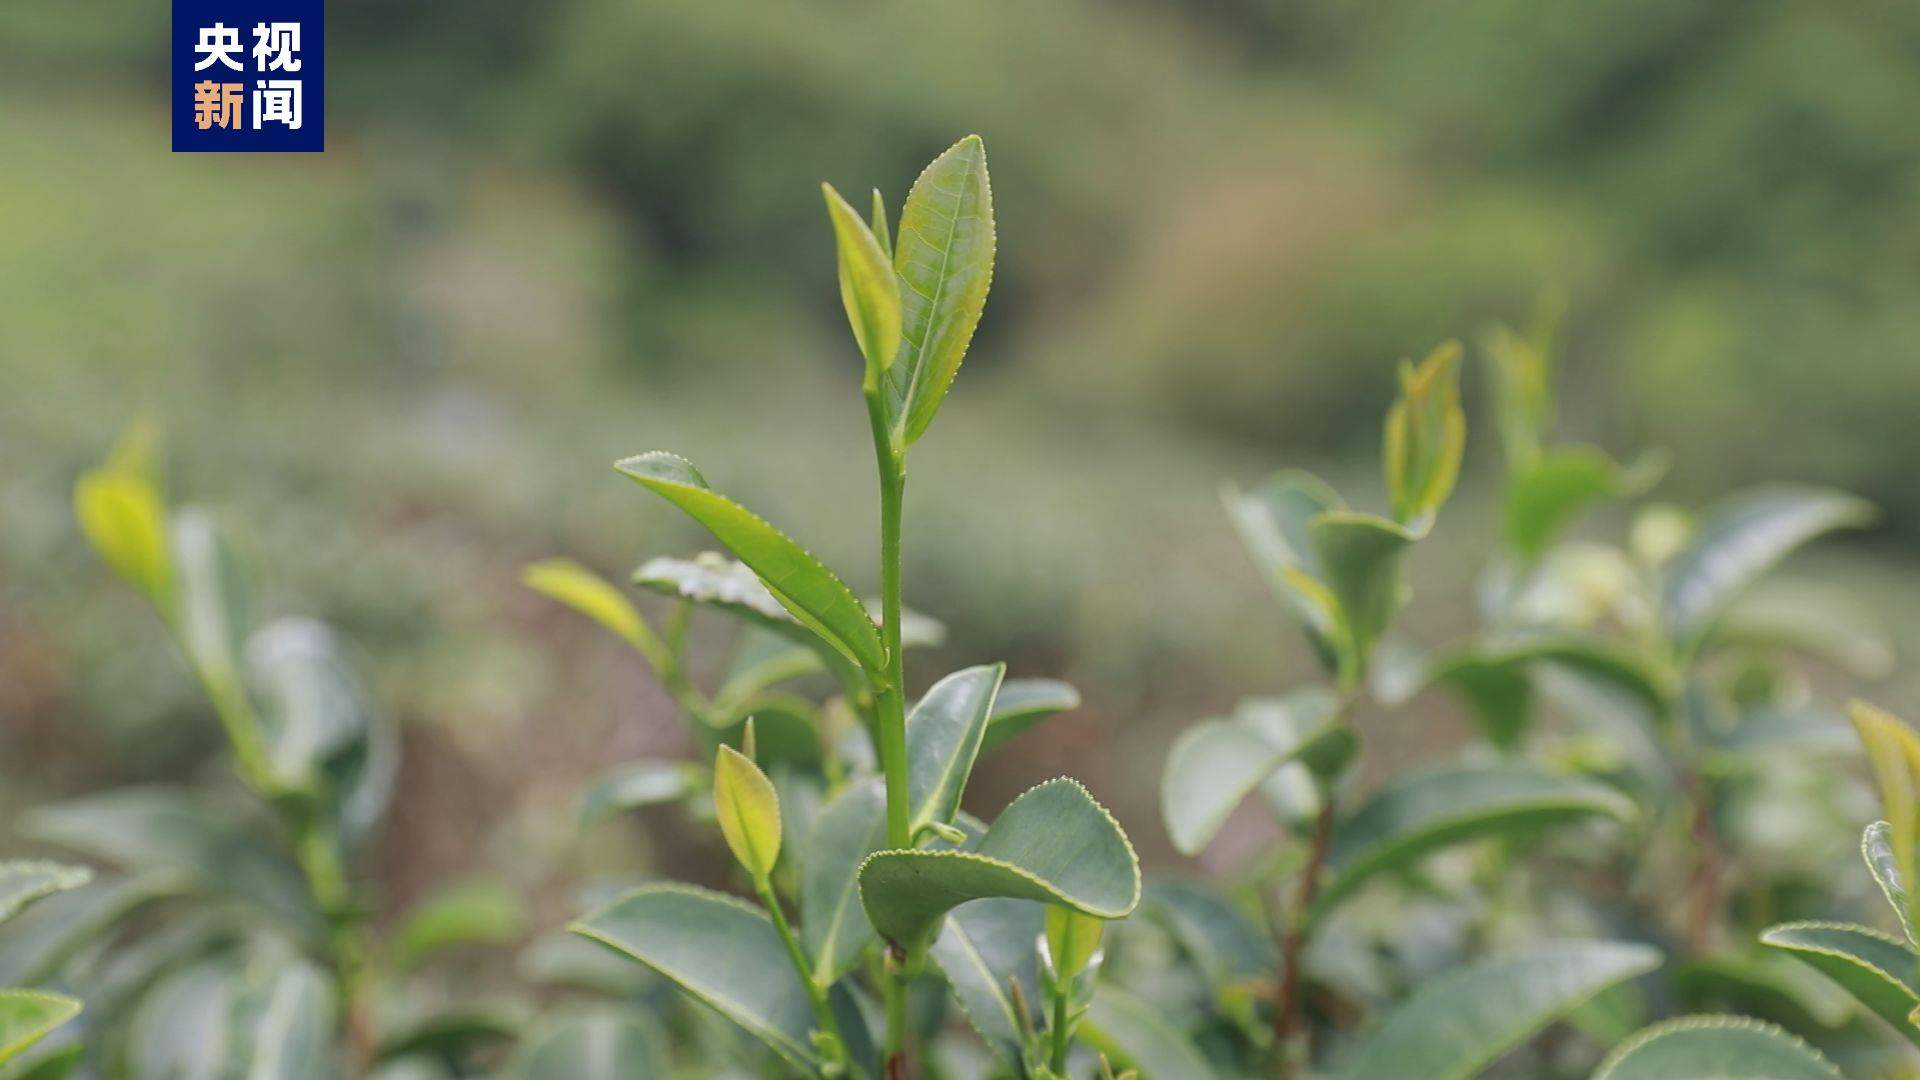 海南大叶茶被证实为山茶属新物种